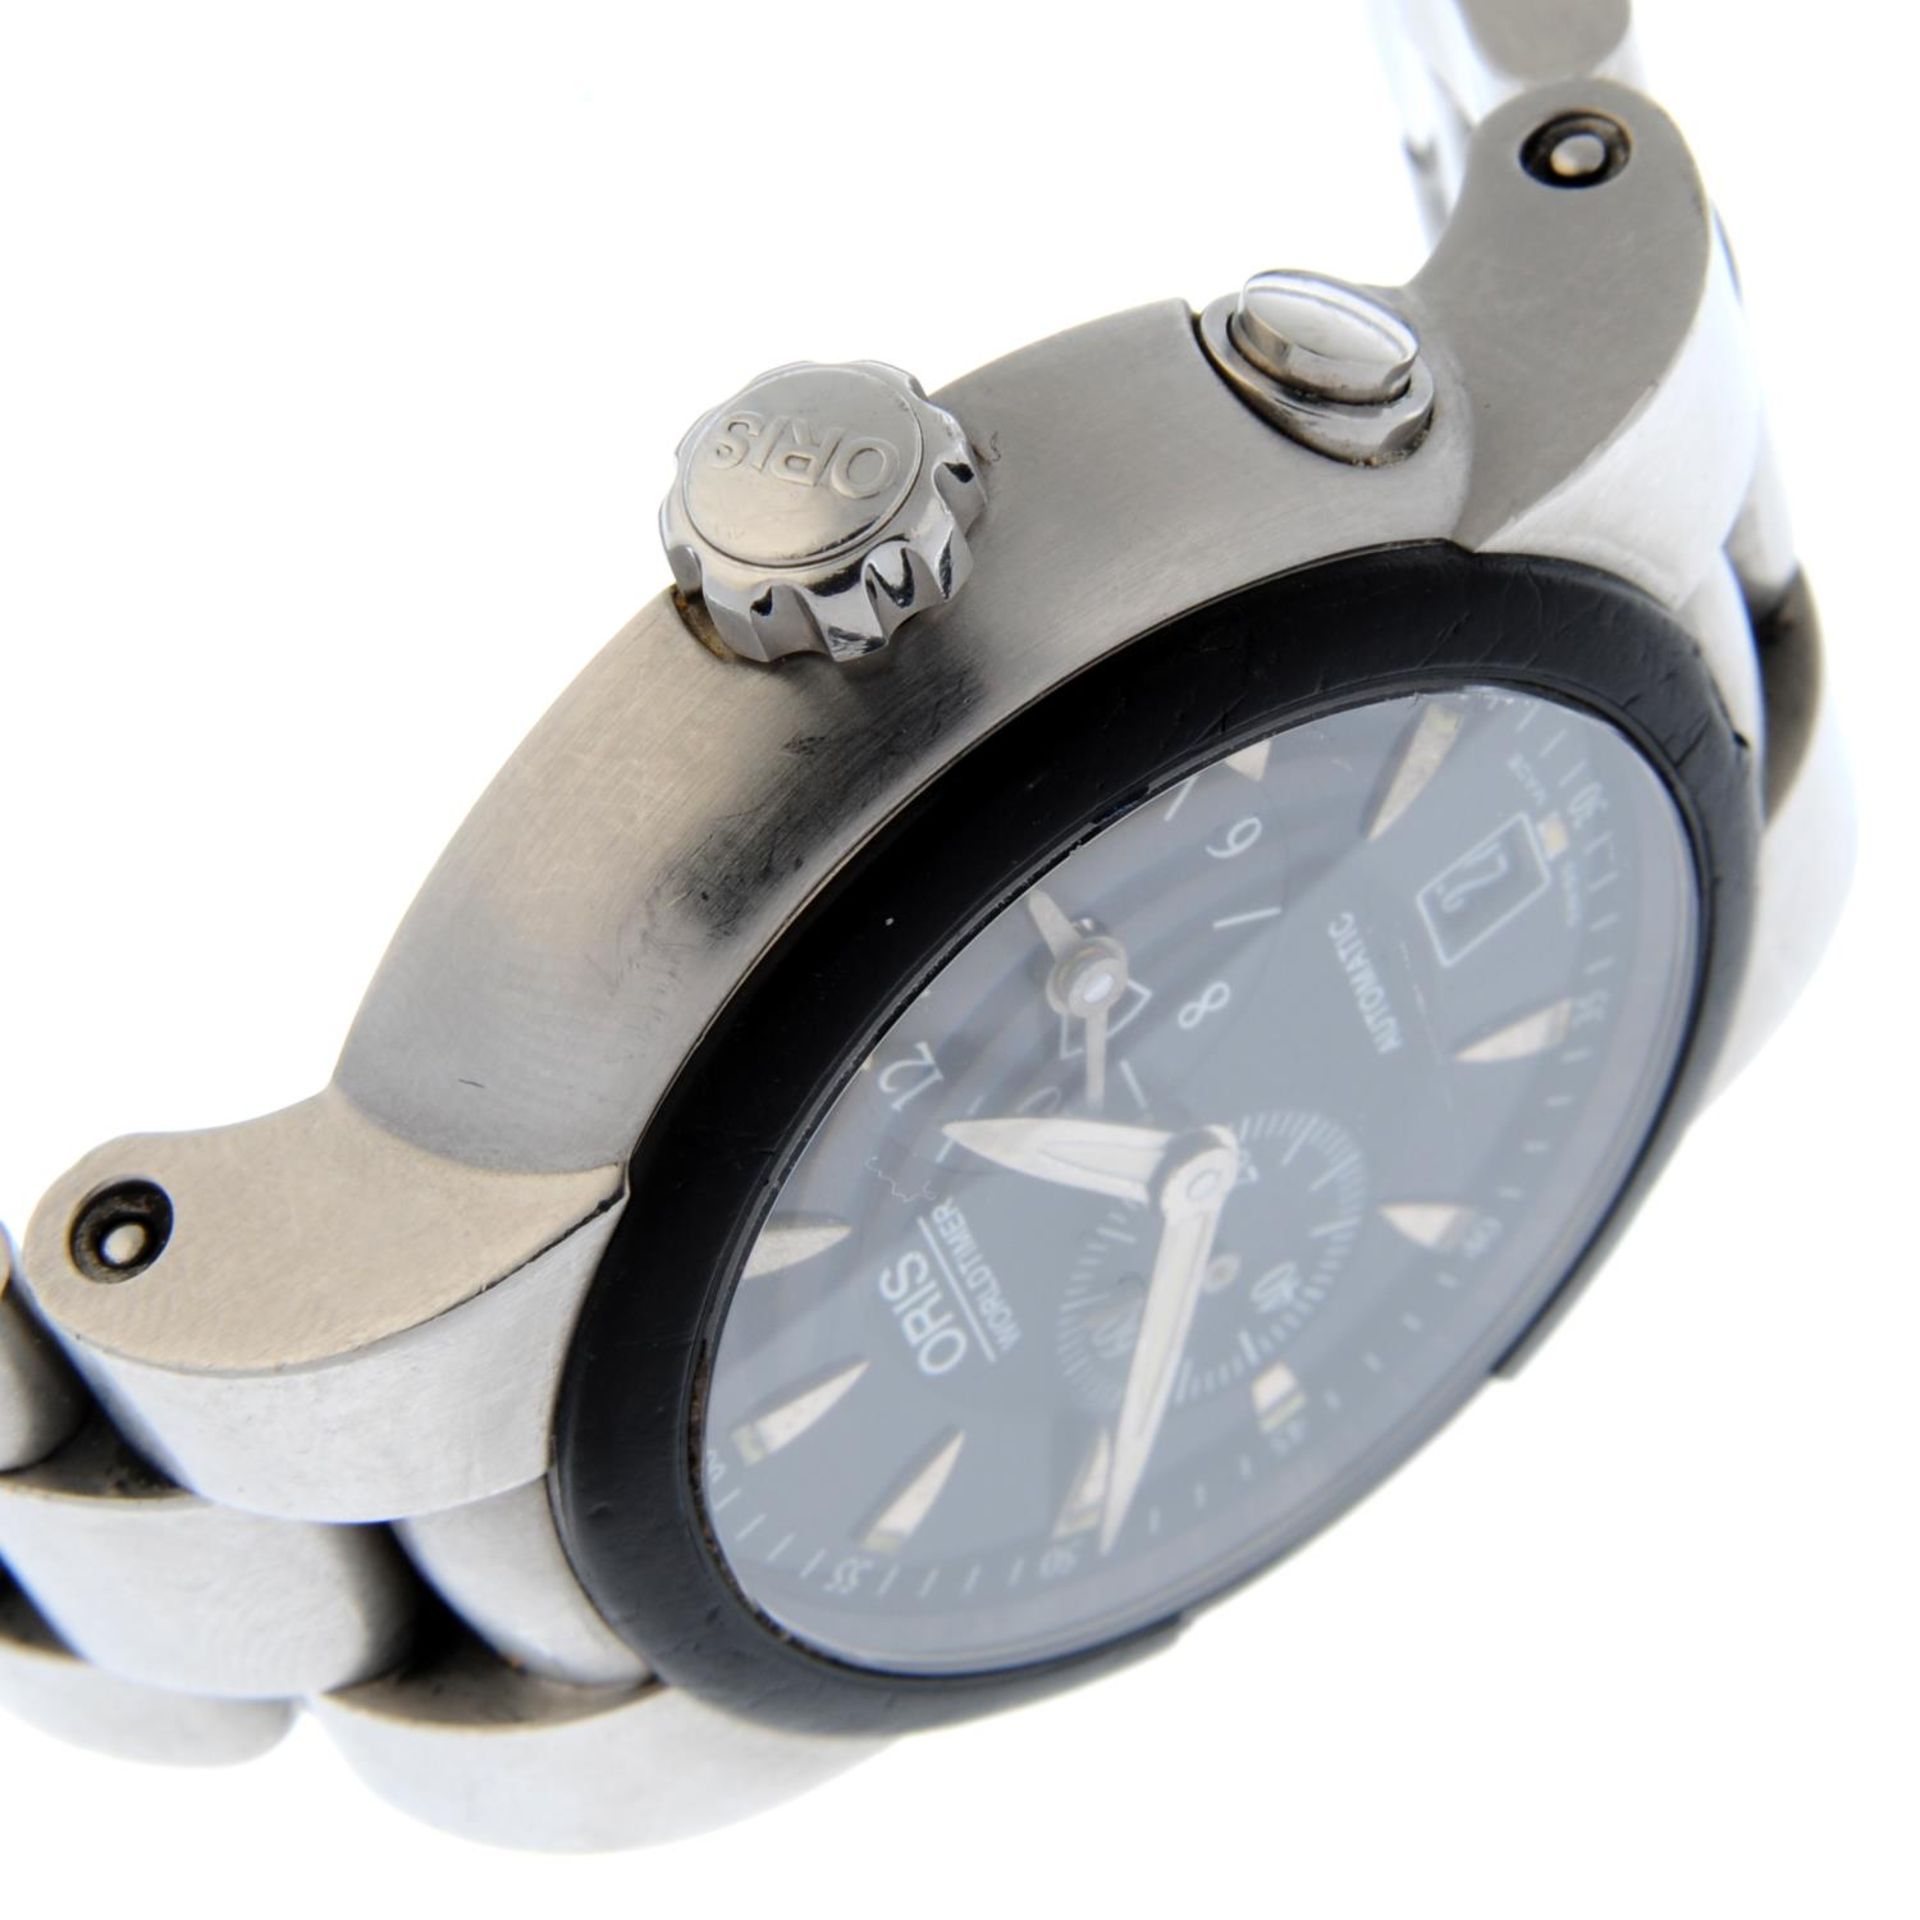 ORIS - a TT1 Worldtimer bracelet watch. - Bild 3 aus 4